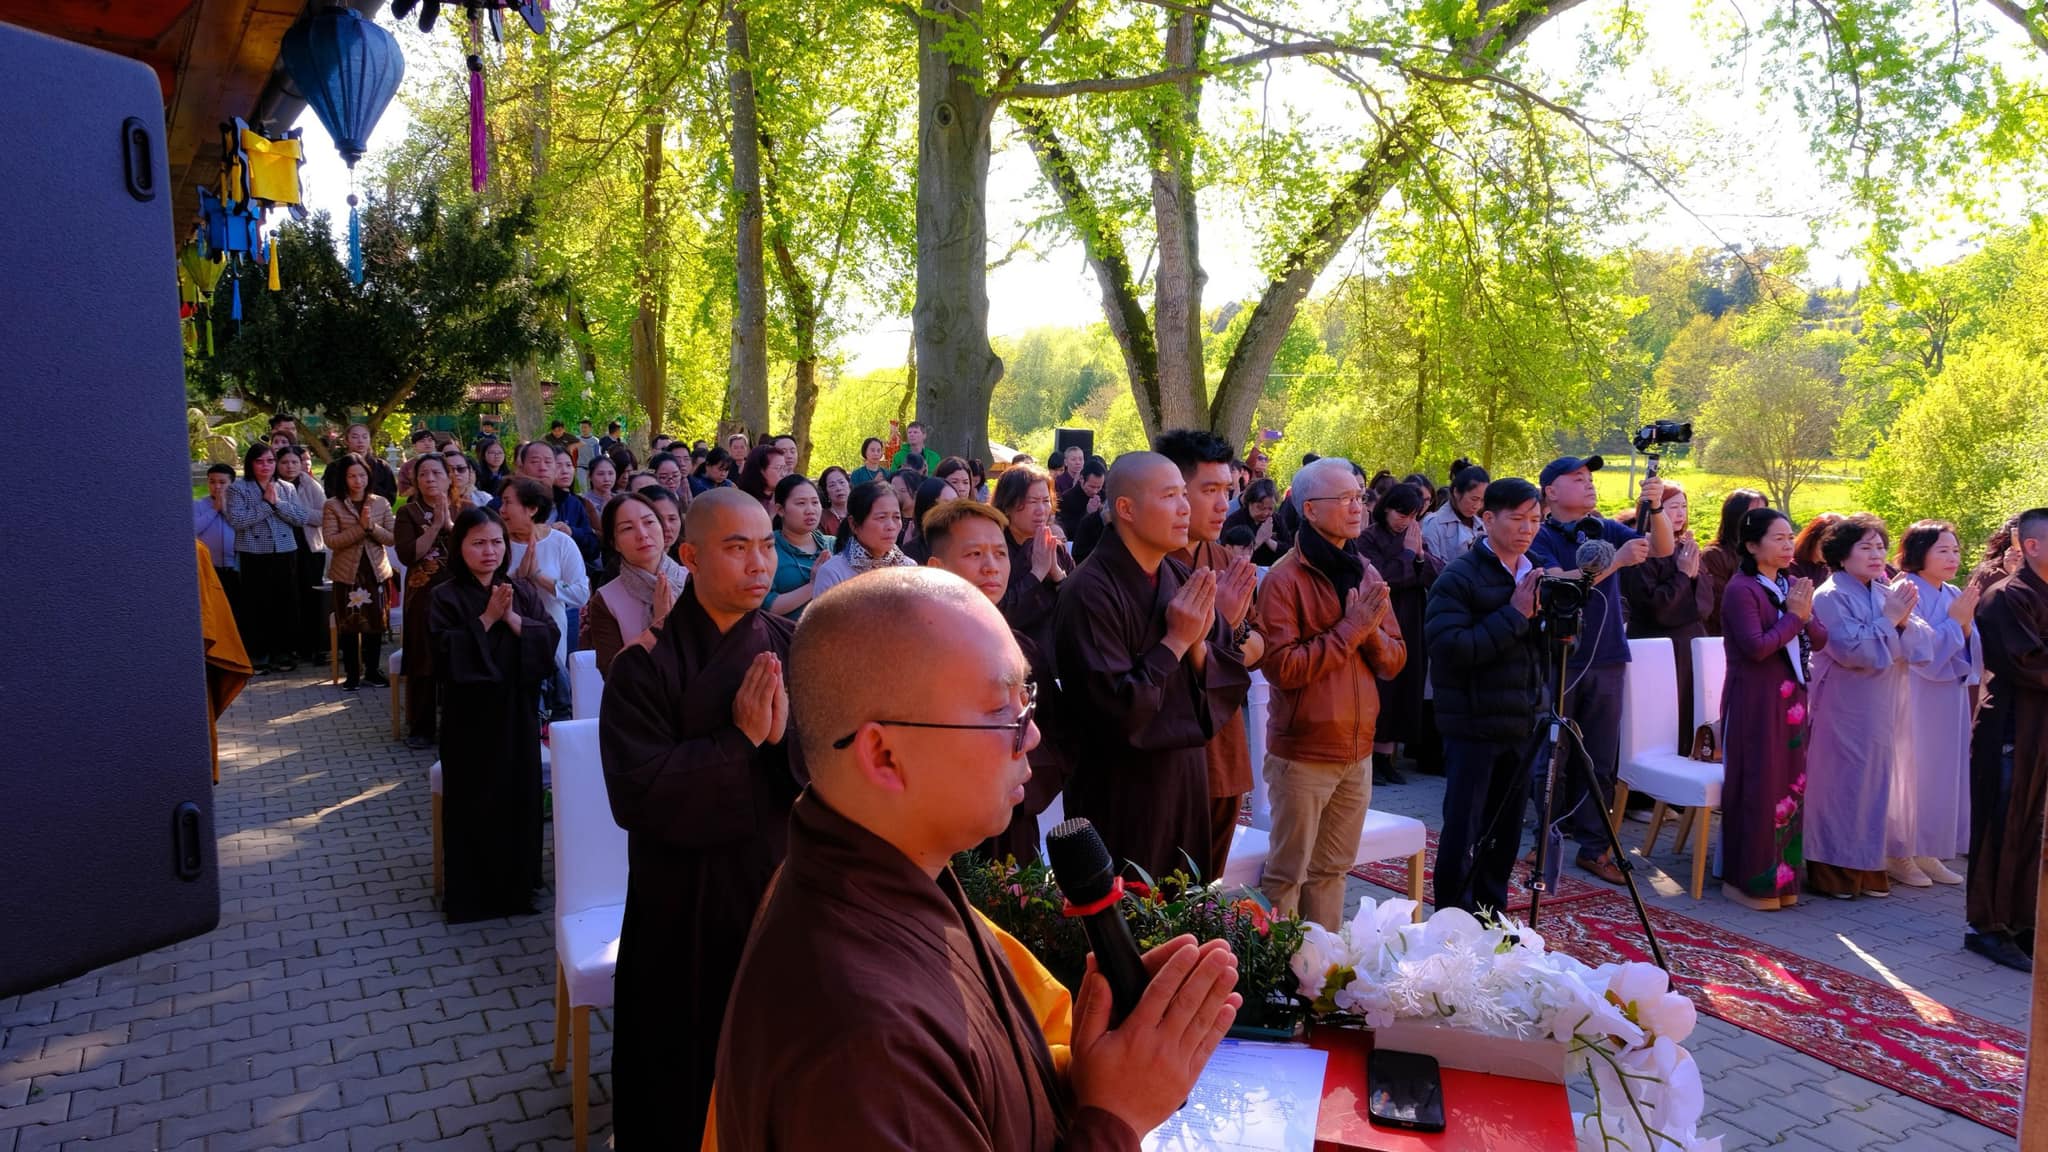 Đại lễ Phật đản tại chùa Giác Minh diễn ra trang nghiêm với các chương trình: dâng hương đảnh lễ tam bảo, tưởng niệm bốn ơn, pháp thoại và nghi thức tắm Phật